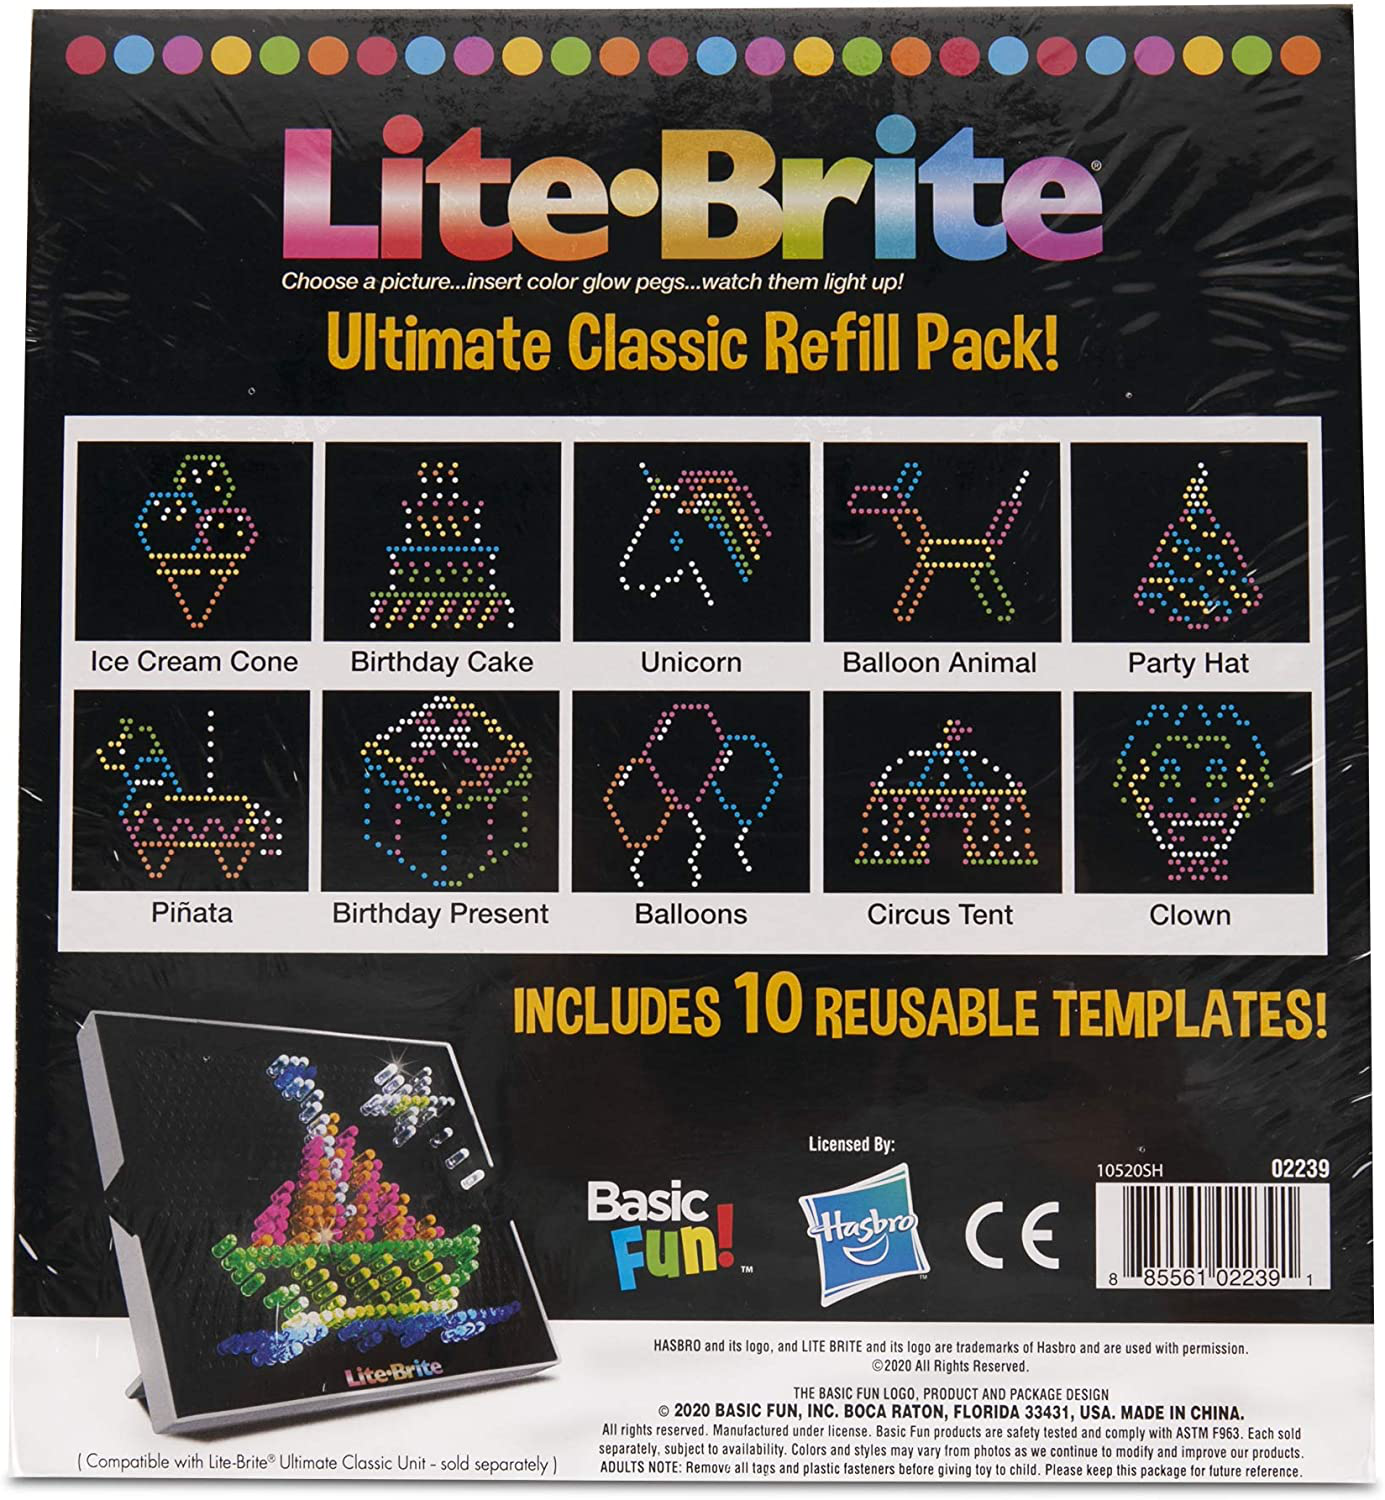 Basic Fun Lite Brite Ultimate Classic Refill Pack